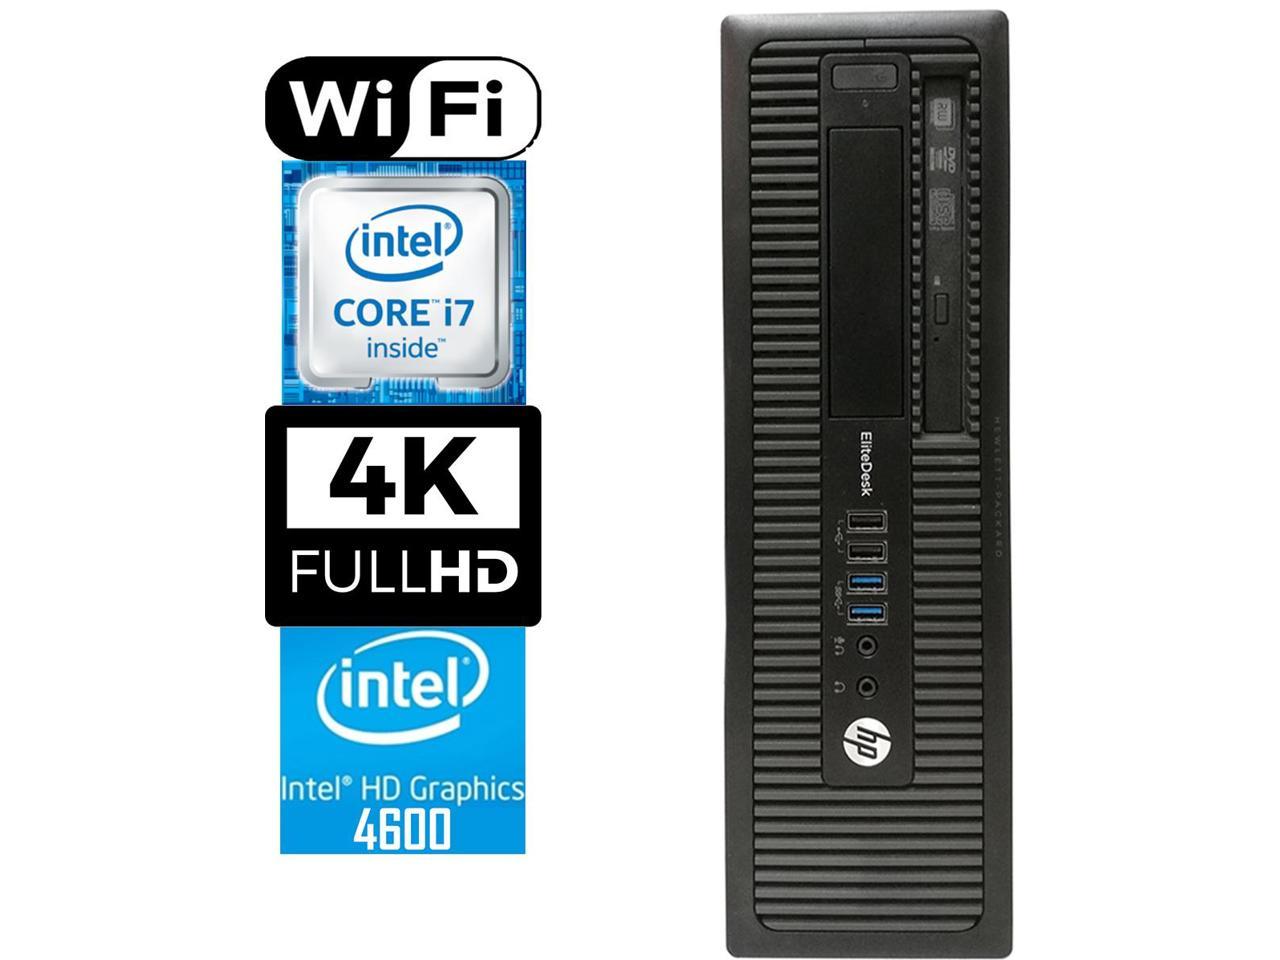 HP 800 G1 SFF Desktop Workstation, Quad-Core i7 4770 3.4, 32GB RAM, 1TB SSD, Intel HD Graphics 4600 4K 3-Monitor Support, USB 3, WiFi, Windows 10 Pro, Bluetooth, HDMI